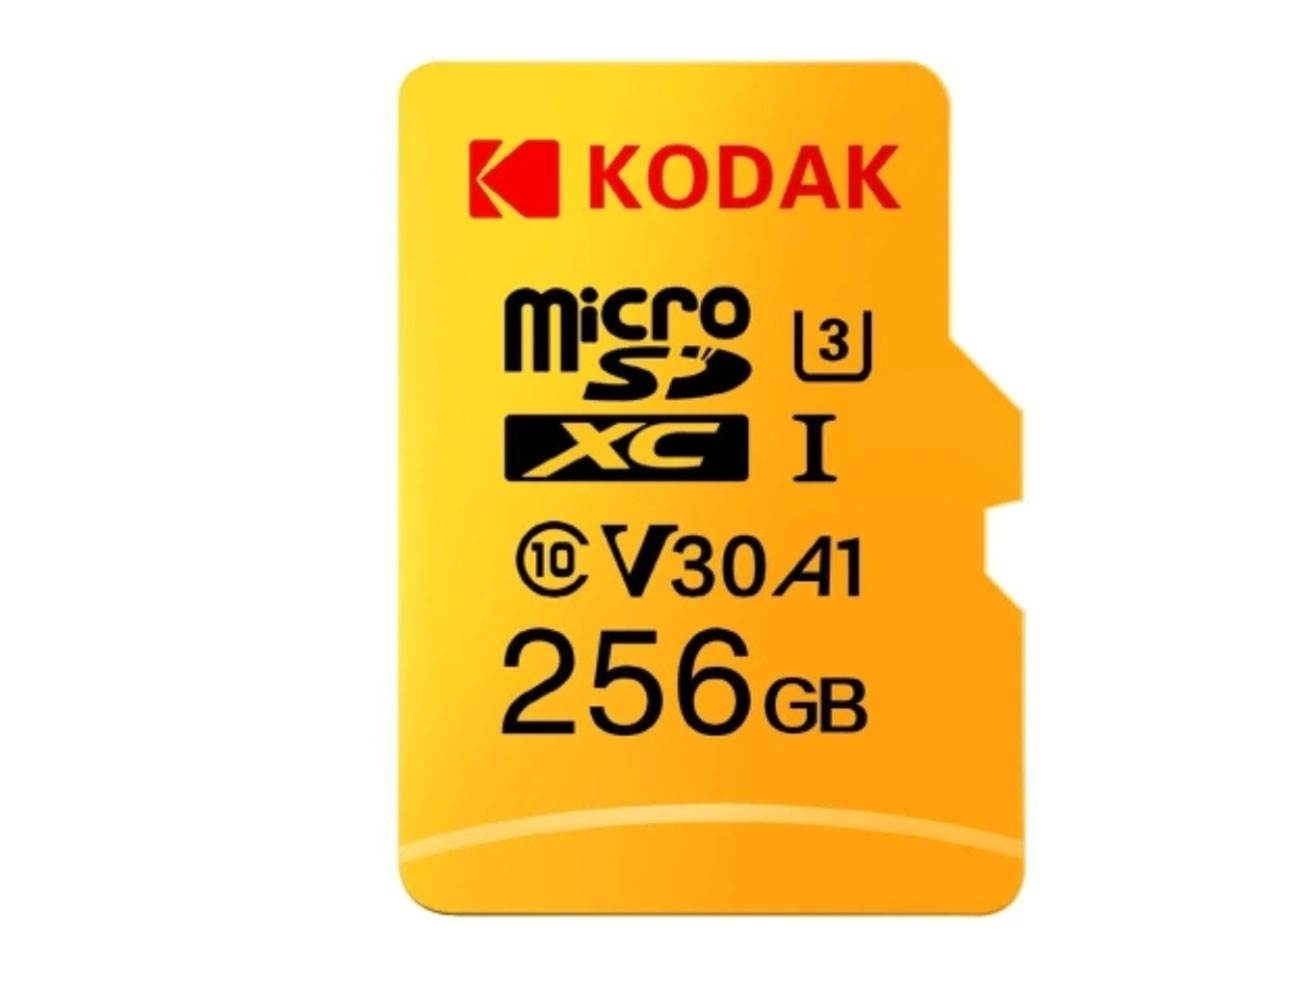 Karta pamięci 256GB i pendrive USB-C - USB-A 32GB dostępne w bardzo atrakcyjnej cenie ciekawostki   Początek tygodnia, więc czas na kolejny wpis pozwalający zaoszczędzić Wam trochę grosza. Dziś mamy dla Was kartę pamięci o pojemności 256GB oraz pendrive USB-C - USB-A o pojemności 32GB. karta 2